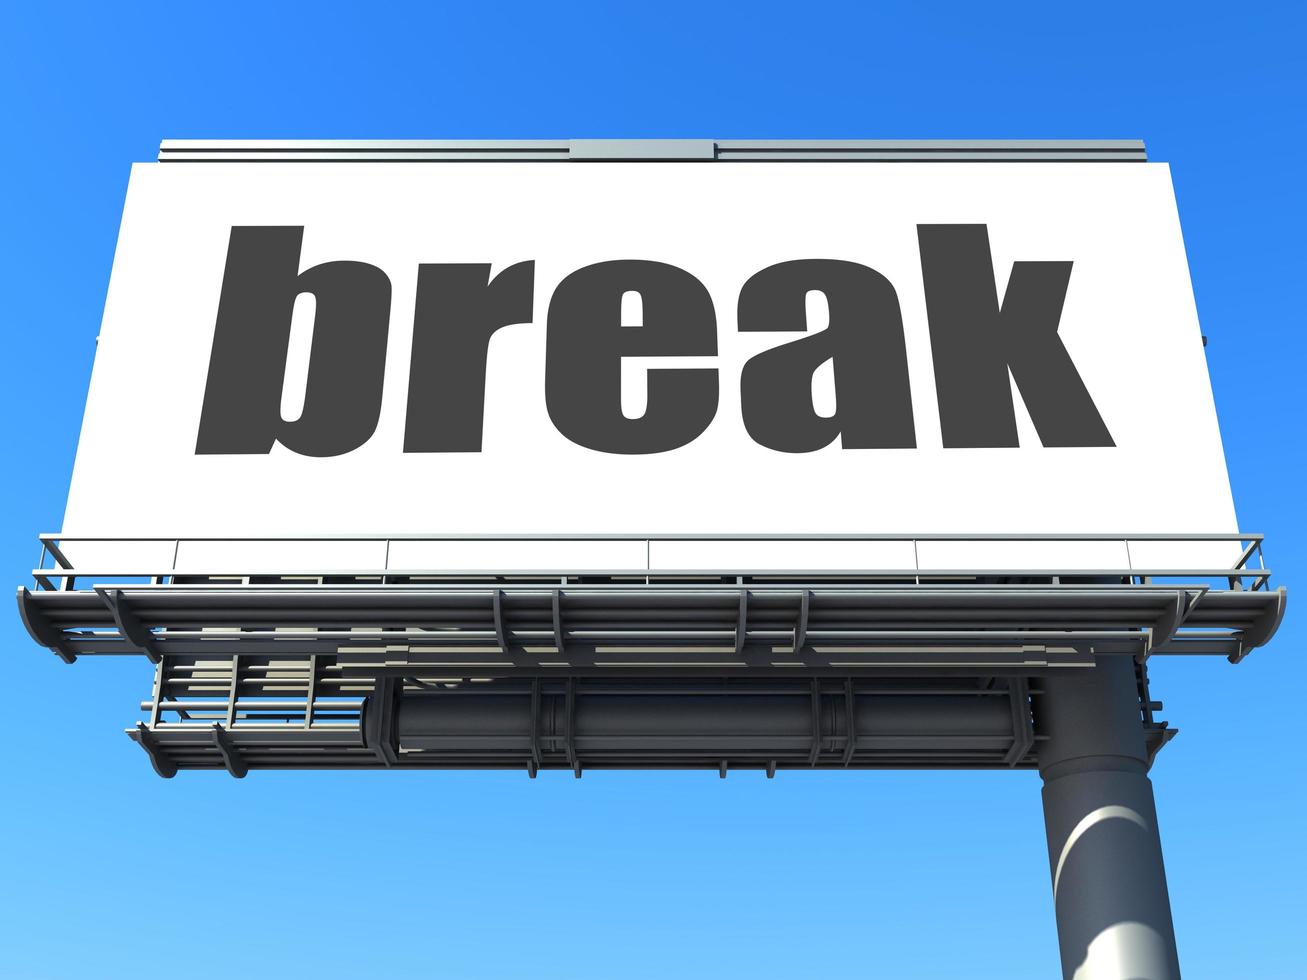 break word on billboard photo